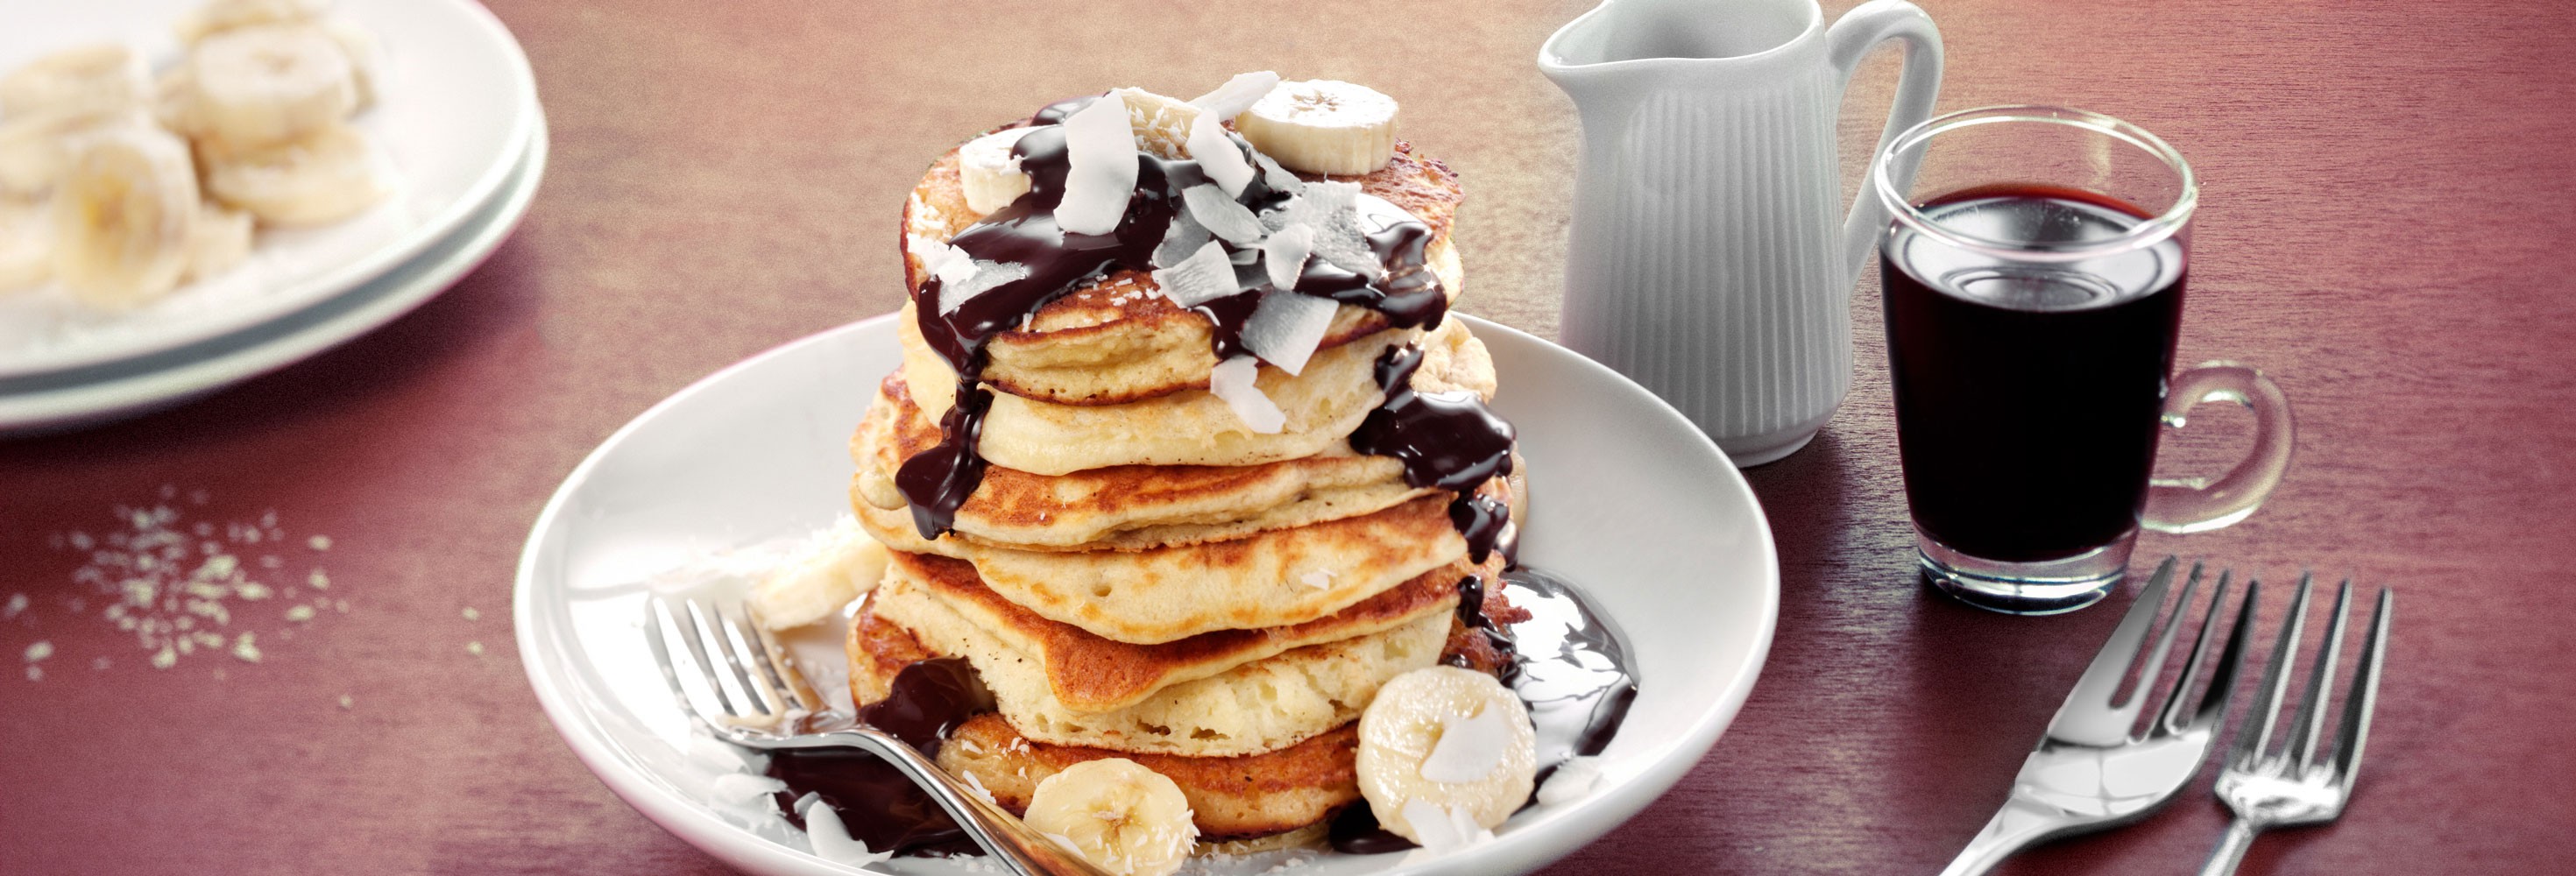 Pancakes met banaan, chocolade en kokos